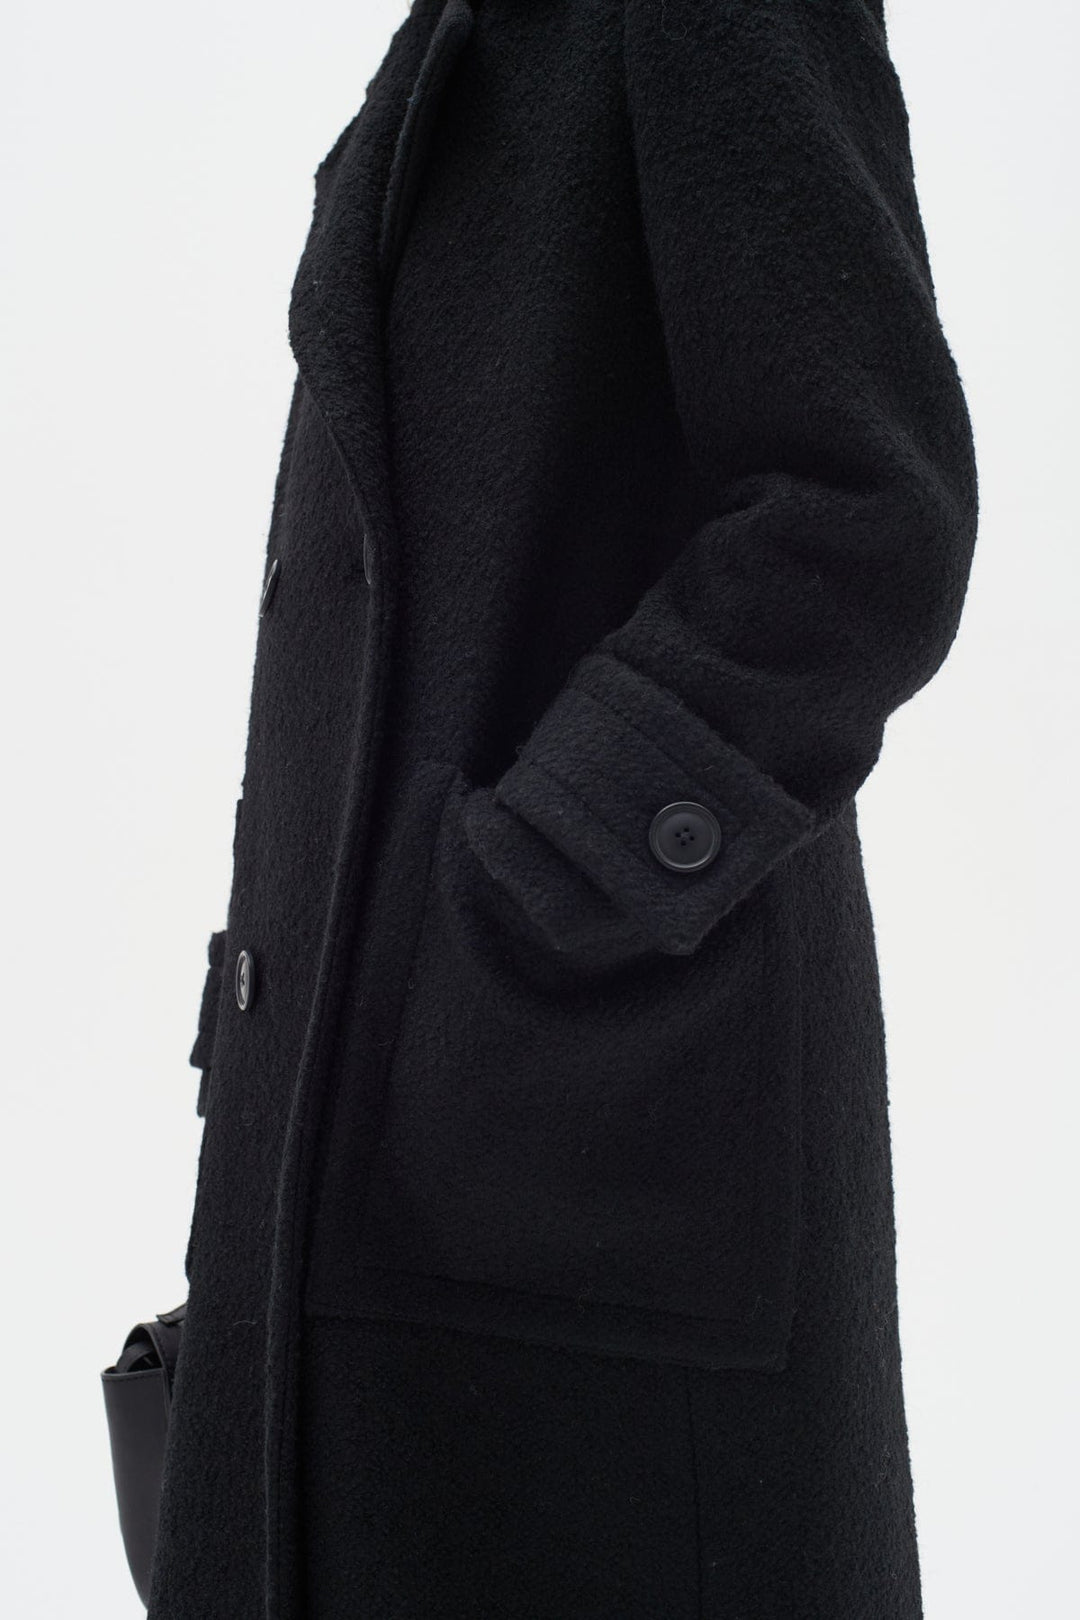 Percyiw Coat Black | Yttertøy | Smuk - Dameklær på nett